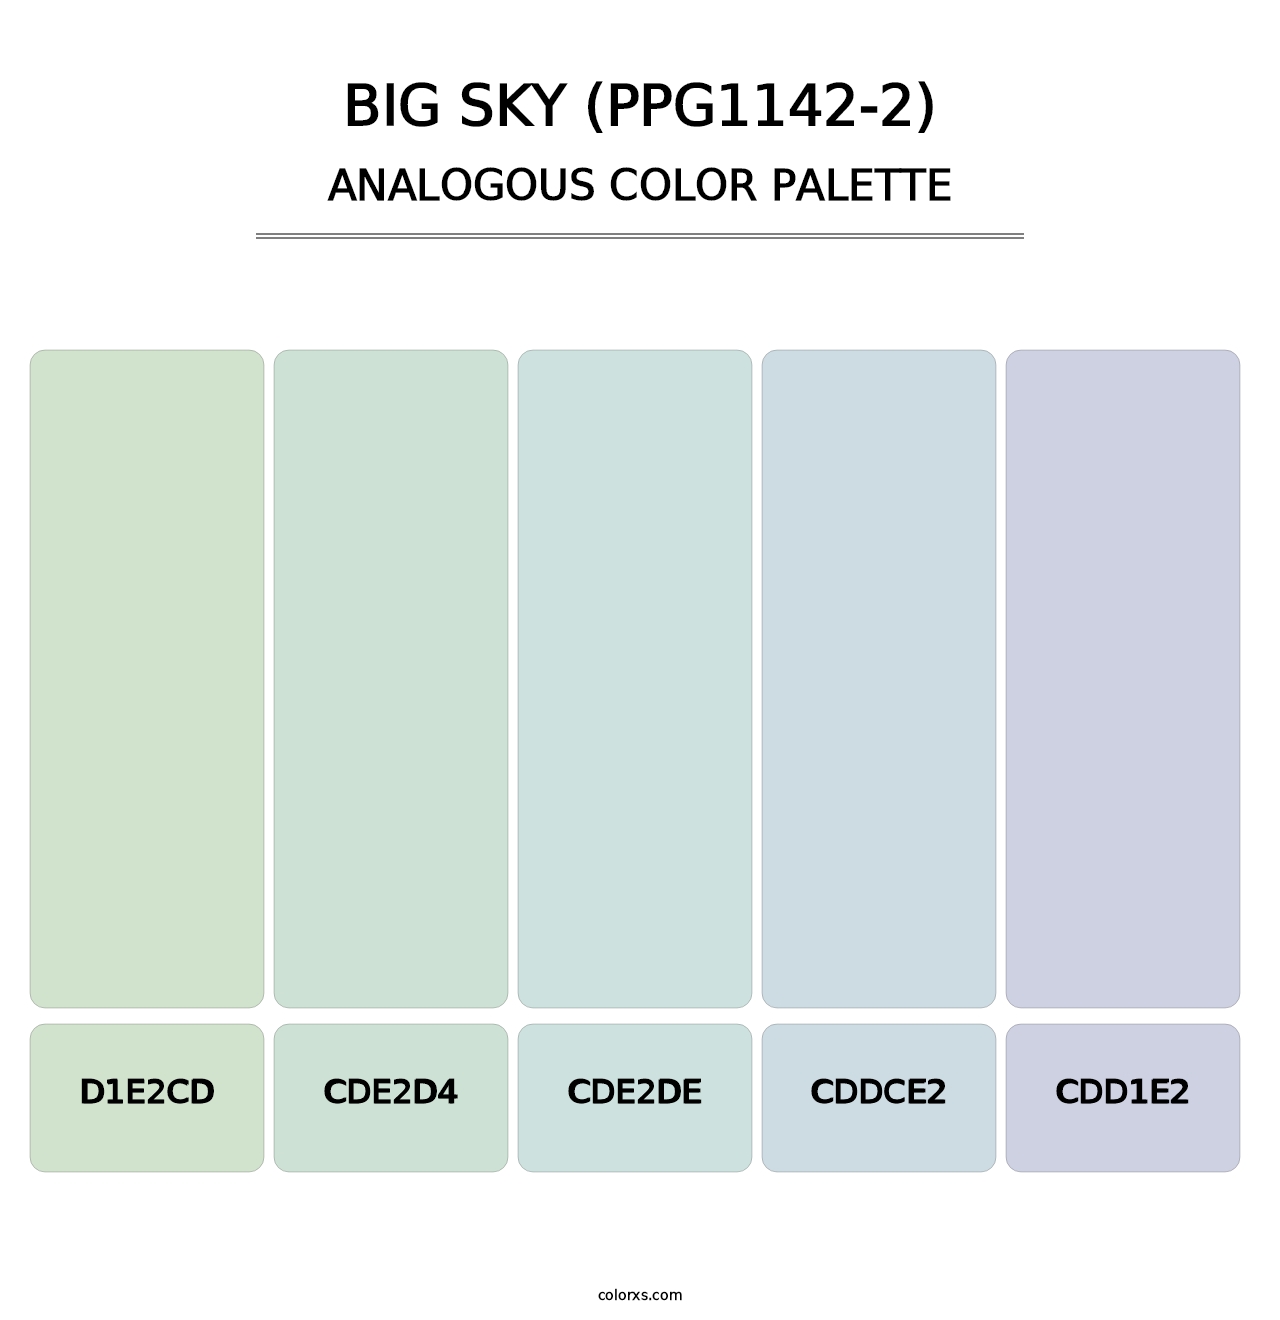 Big Sky (PPG1142-2) - Analogous Color Palette